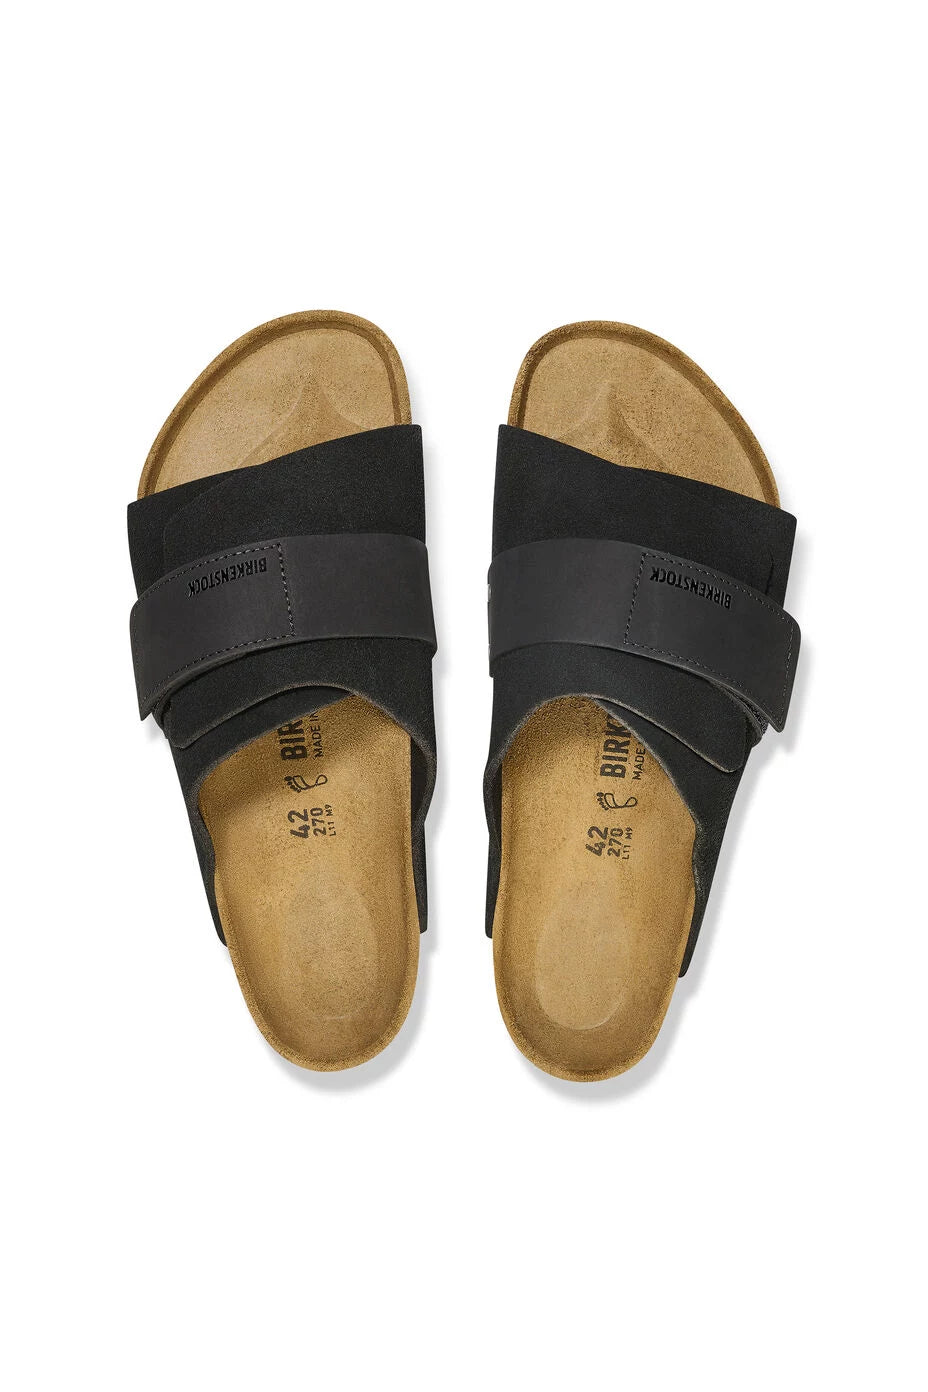 Kyoto Sandal Footwear Birkenstock   